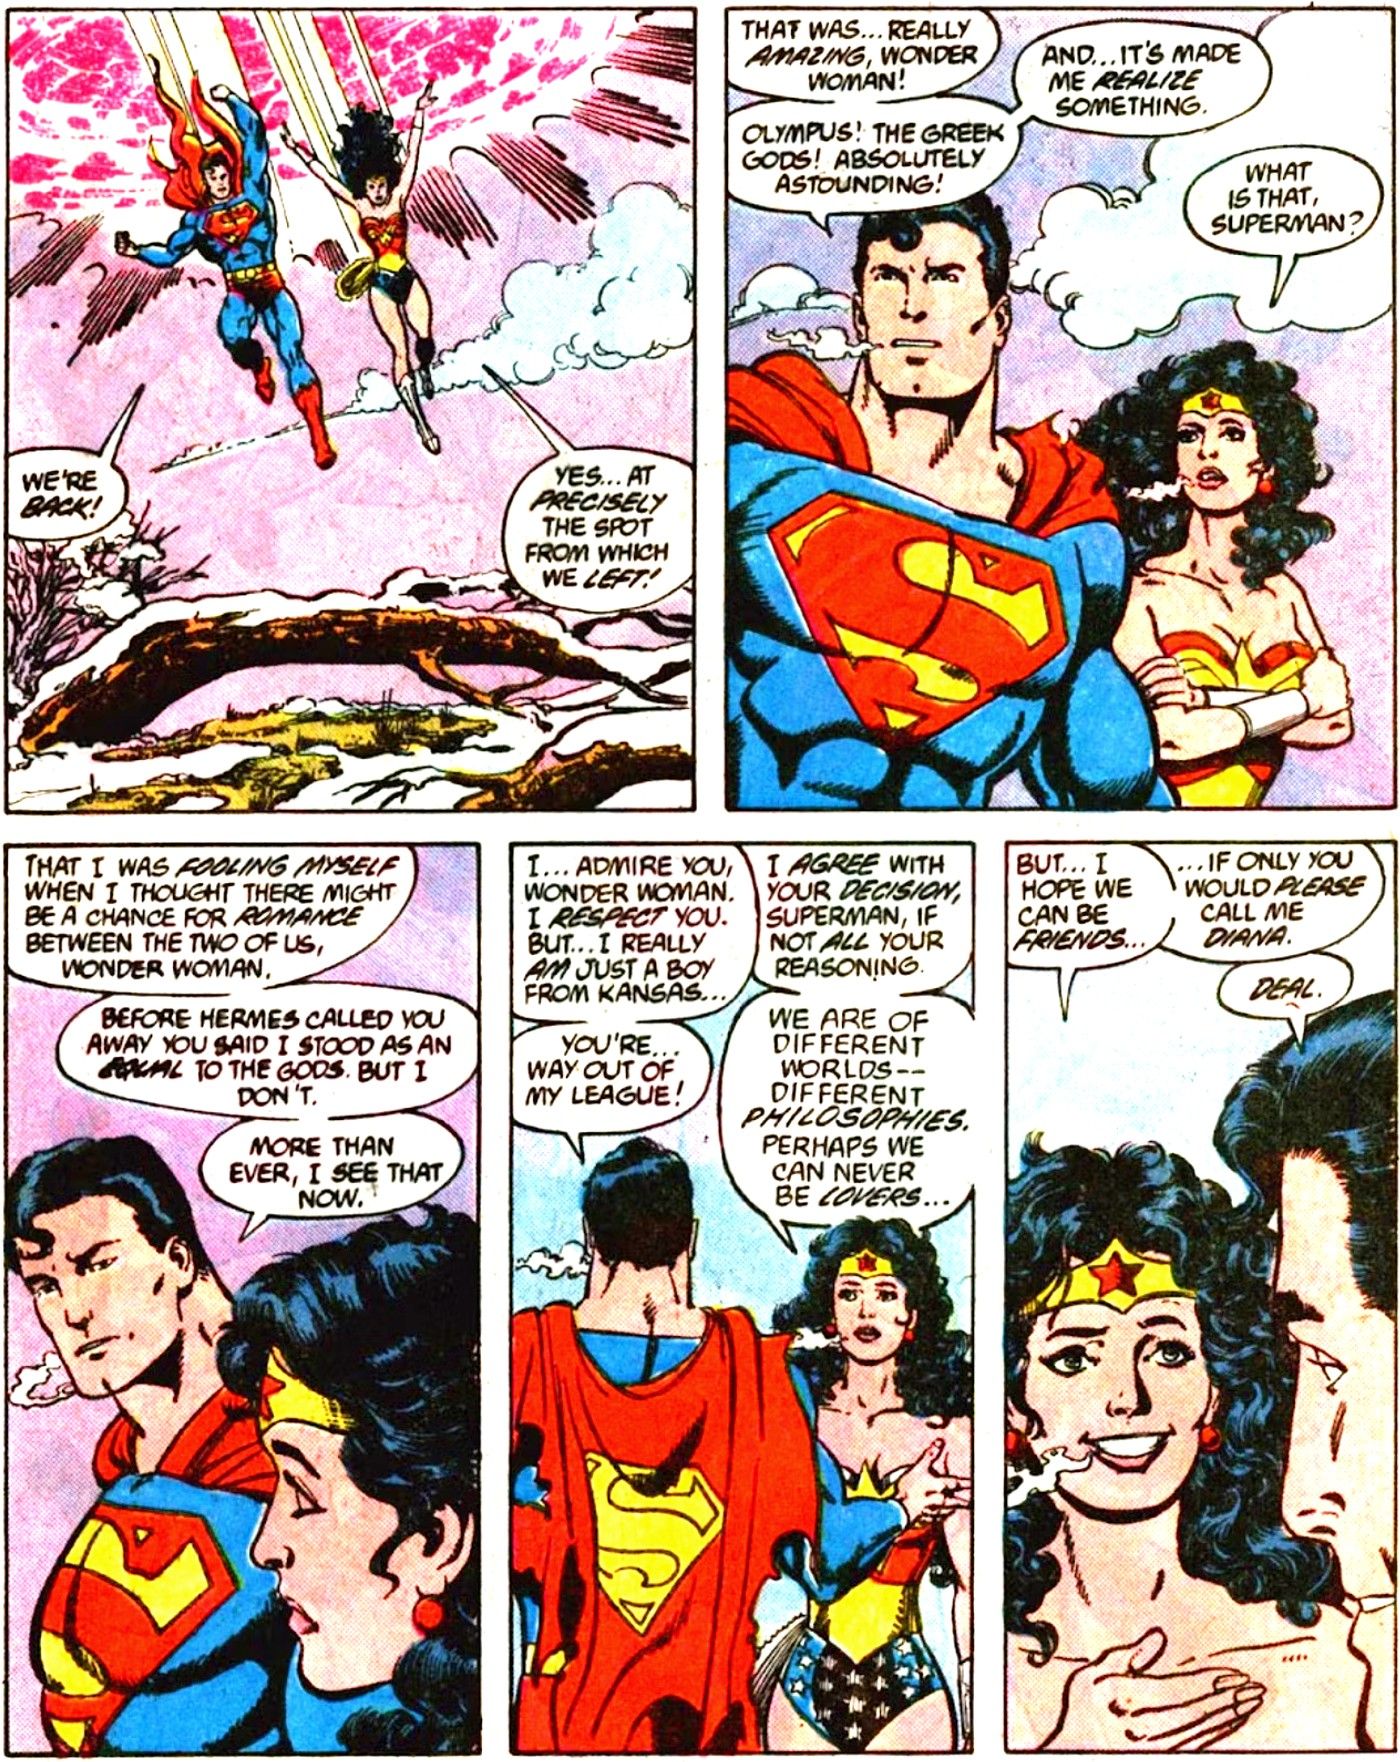 rendez-vous entre superman et wonder woman